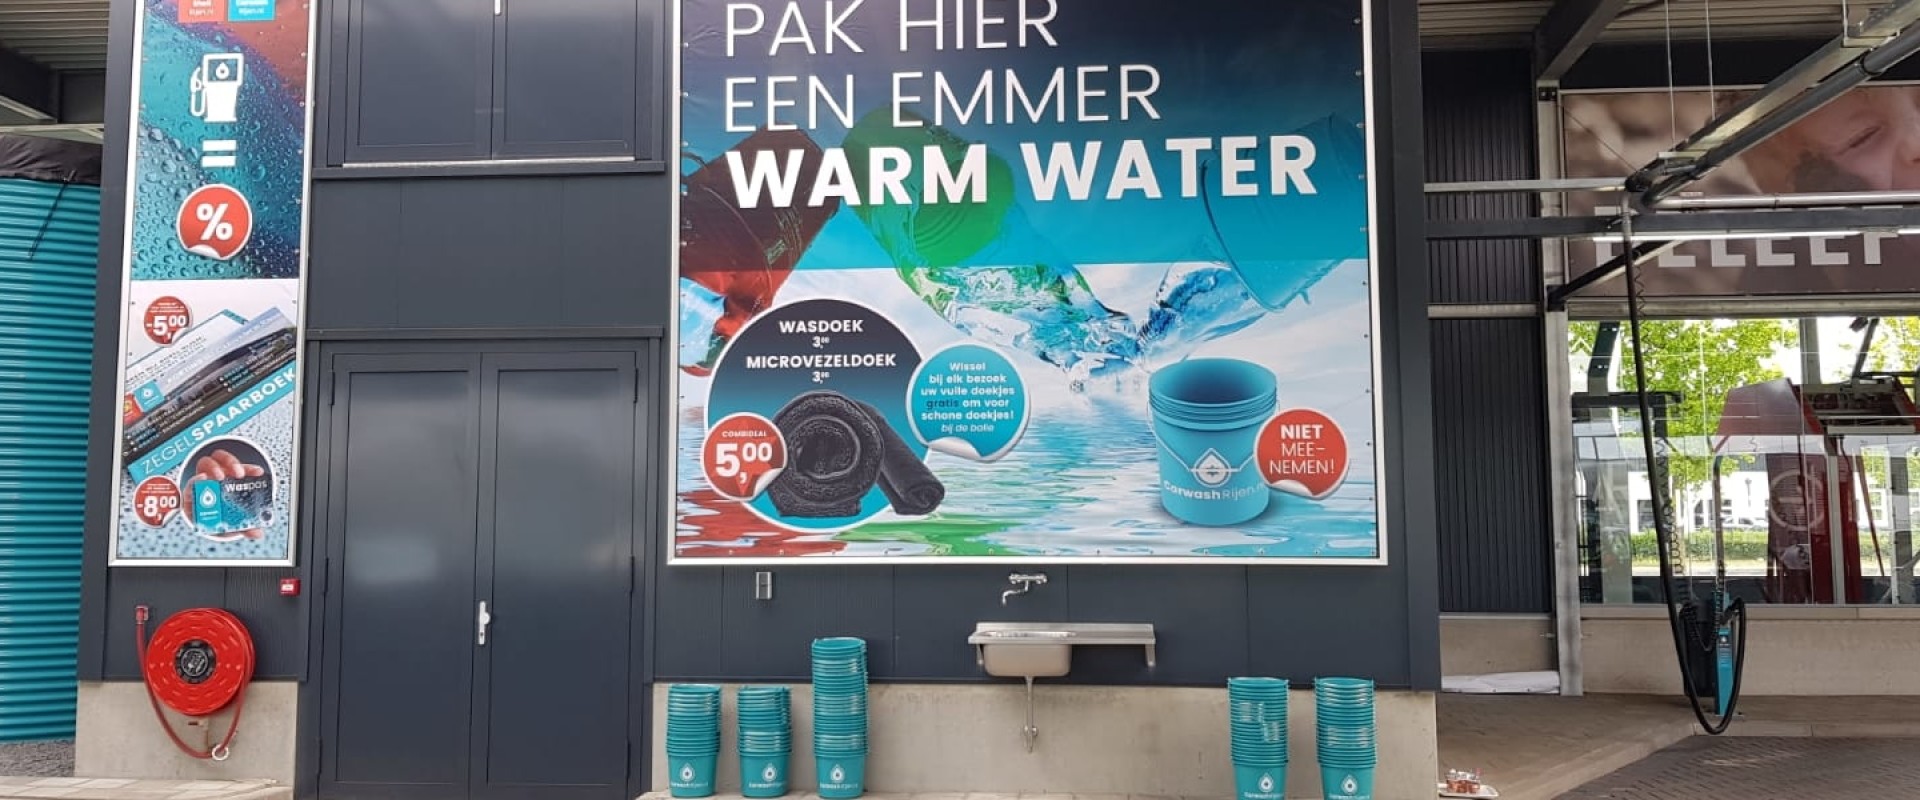 Carwash Rijen biedt klanten extra schoonmaaktool met emmer warm water